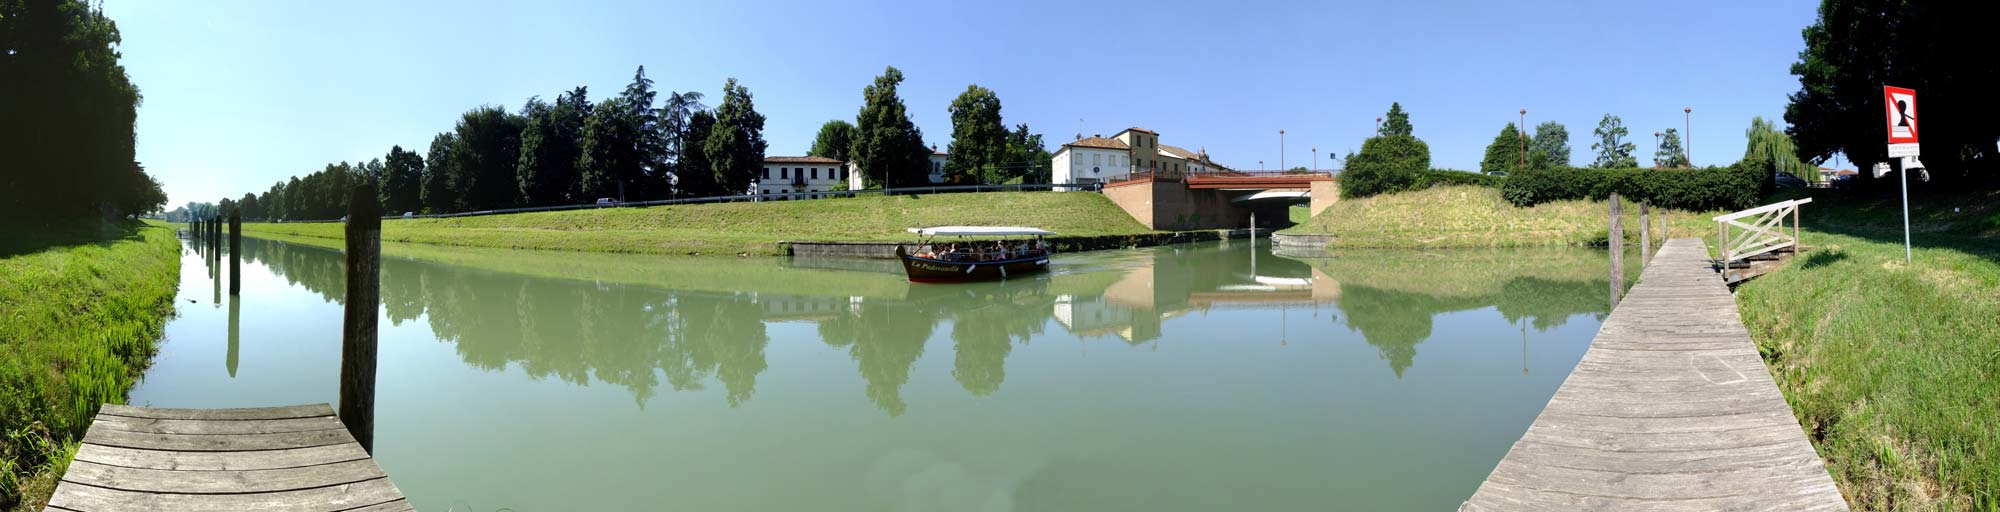 La Riviera Euganea, i canali di Padova e la Riviera del Brenta a bordo di una tipica peota veneziana.